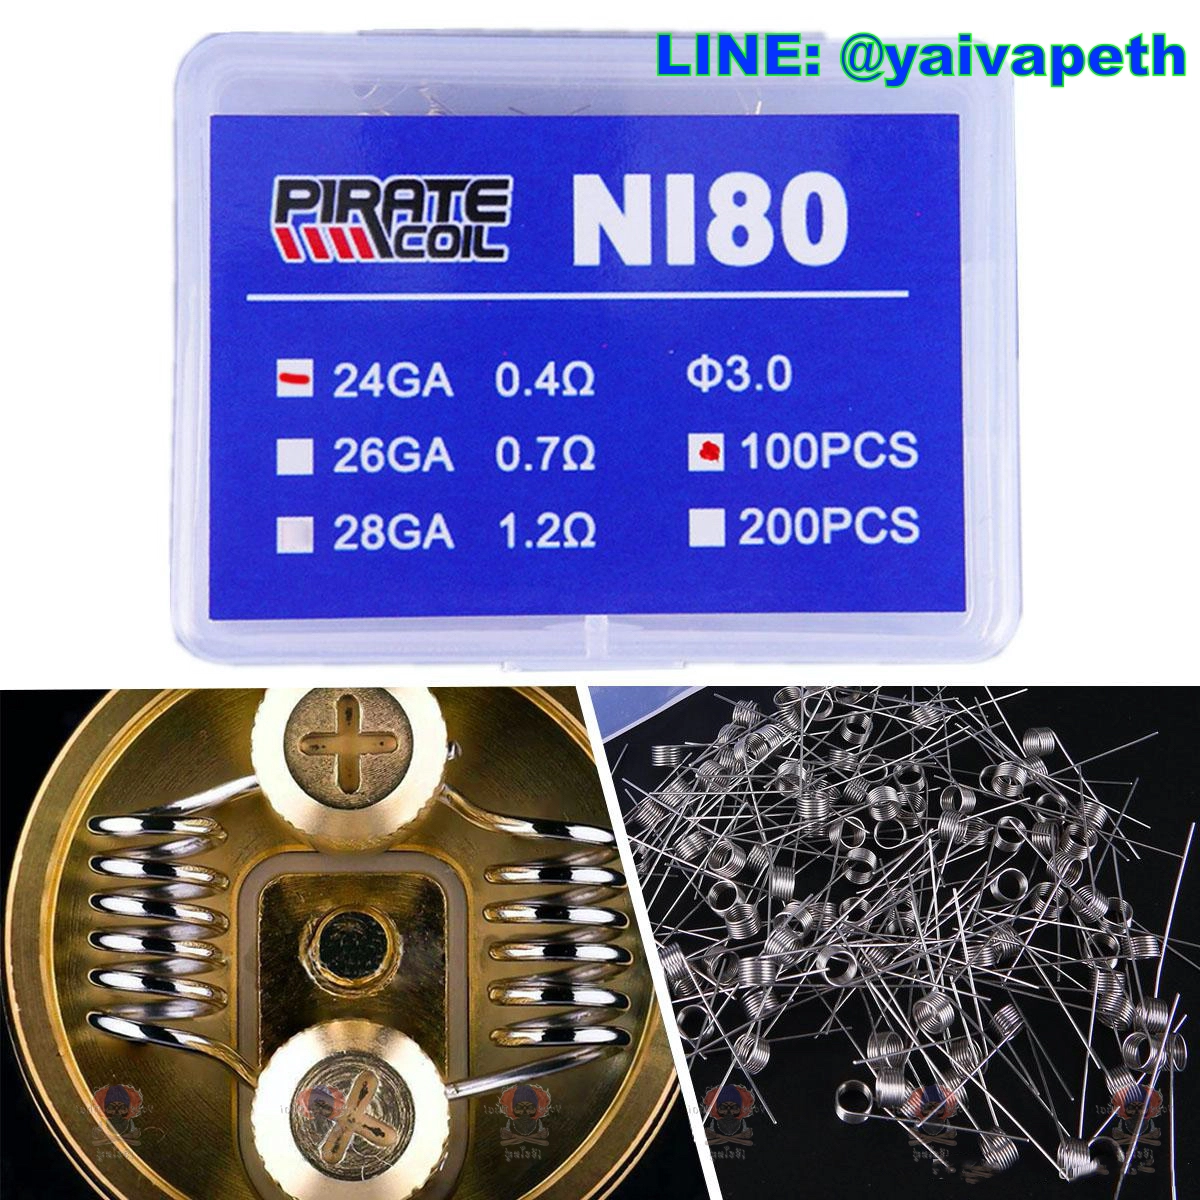 ลวด - PIRATE Coil Ni80 0.4 24GA ร้อนไว กลิ่นดี ใช้ได้ไม่นานมาก วัสดุ: NI80 24GA / 0.4 โอห์ม 26GA / 0.75 โอห์ม 28GA / 1.2 โอห์ม